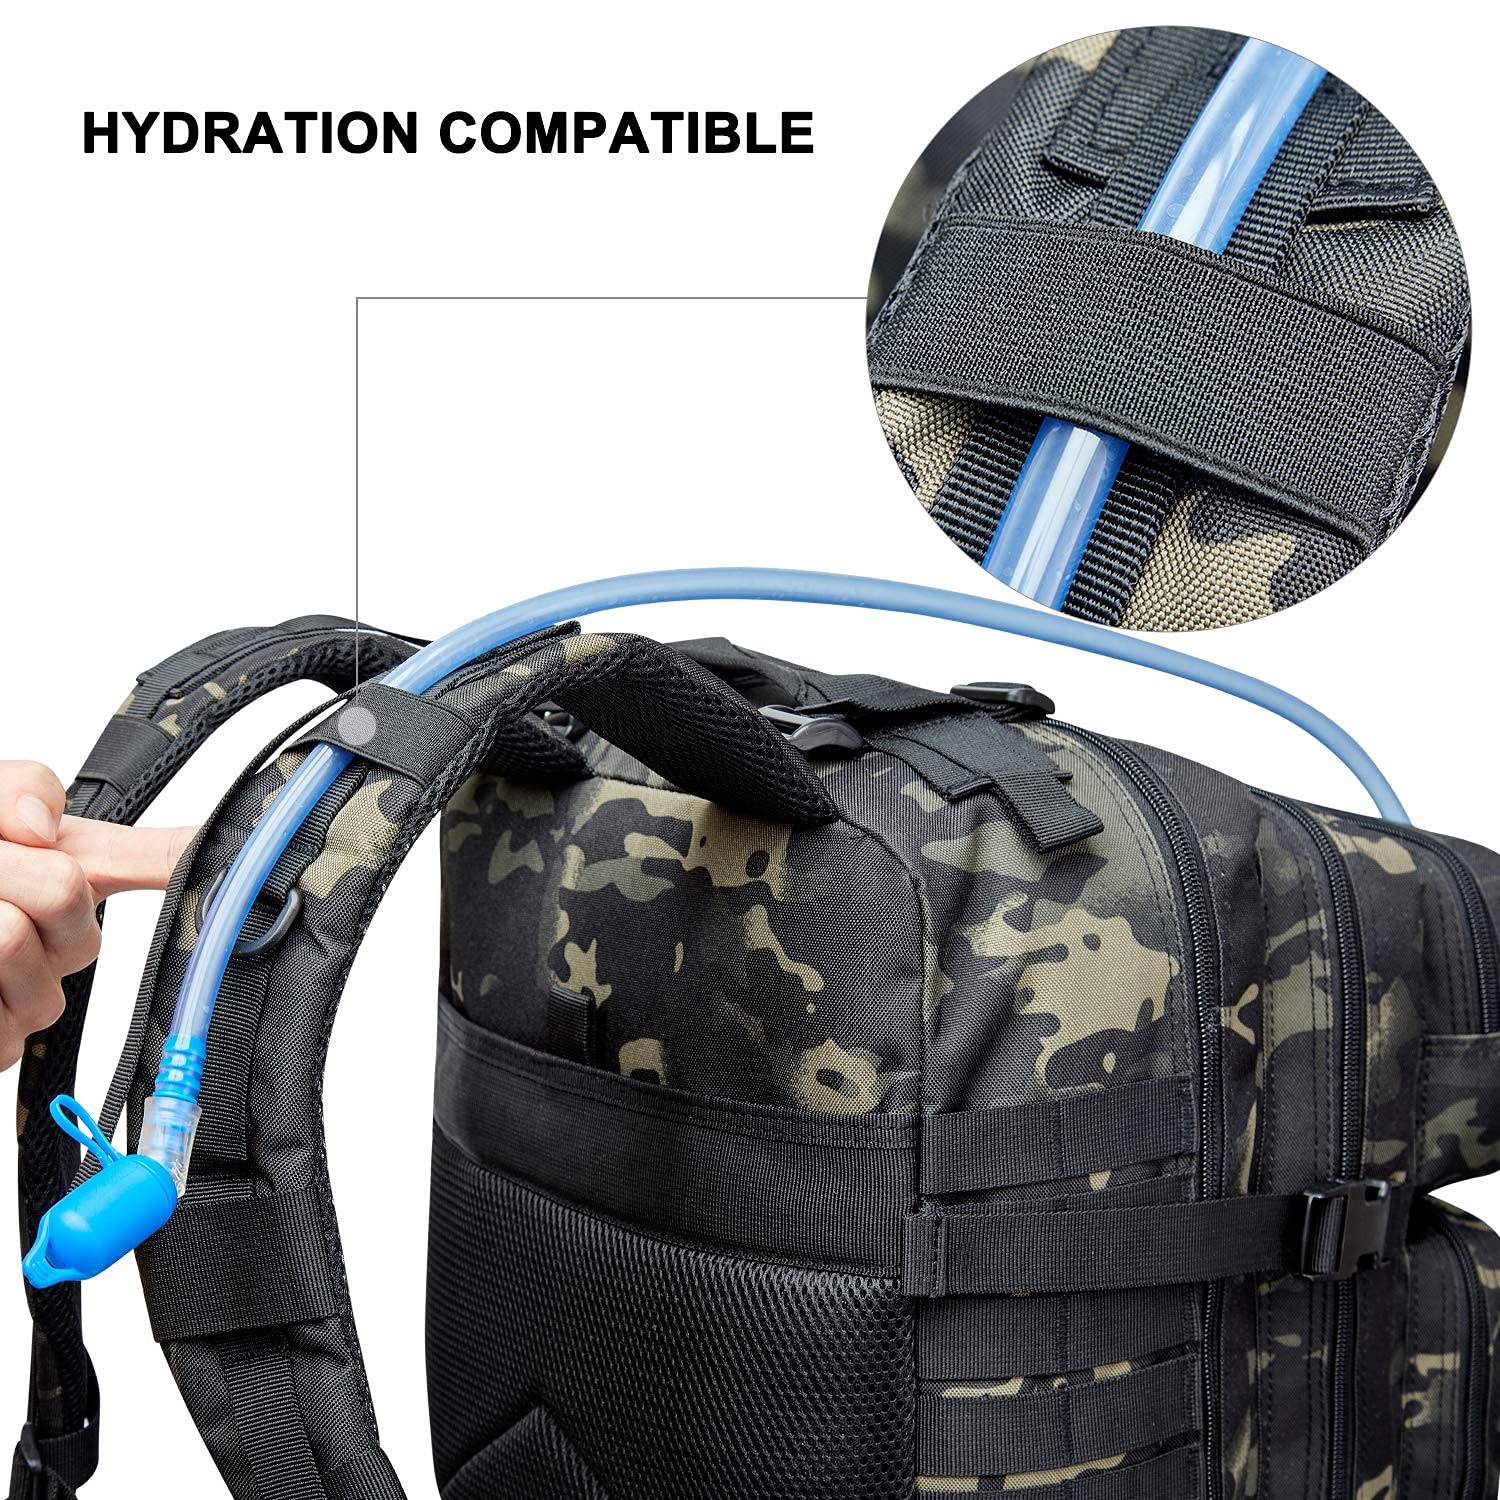 Prospo 40L Military Tactical Shoulder Backpack for School Assault Survival Molle Bag Pack Fishing Backpack for Tackle Storage